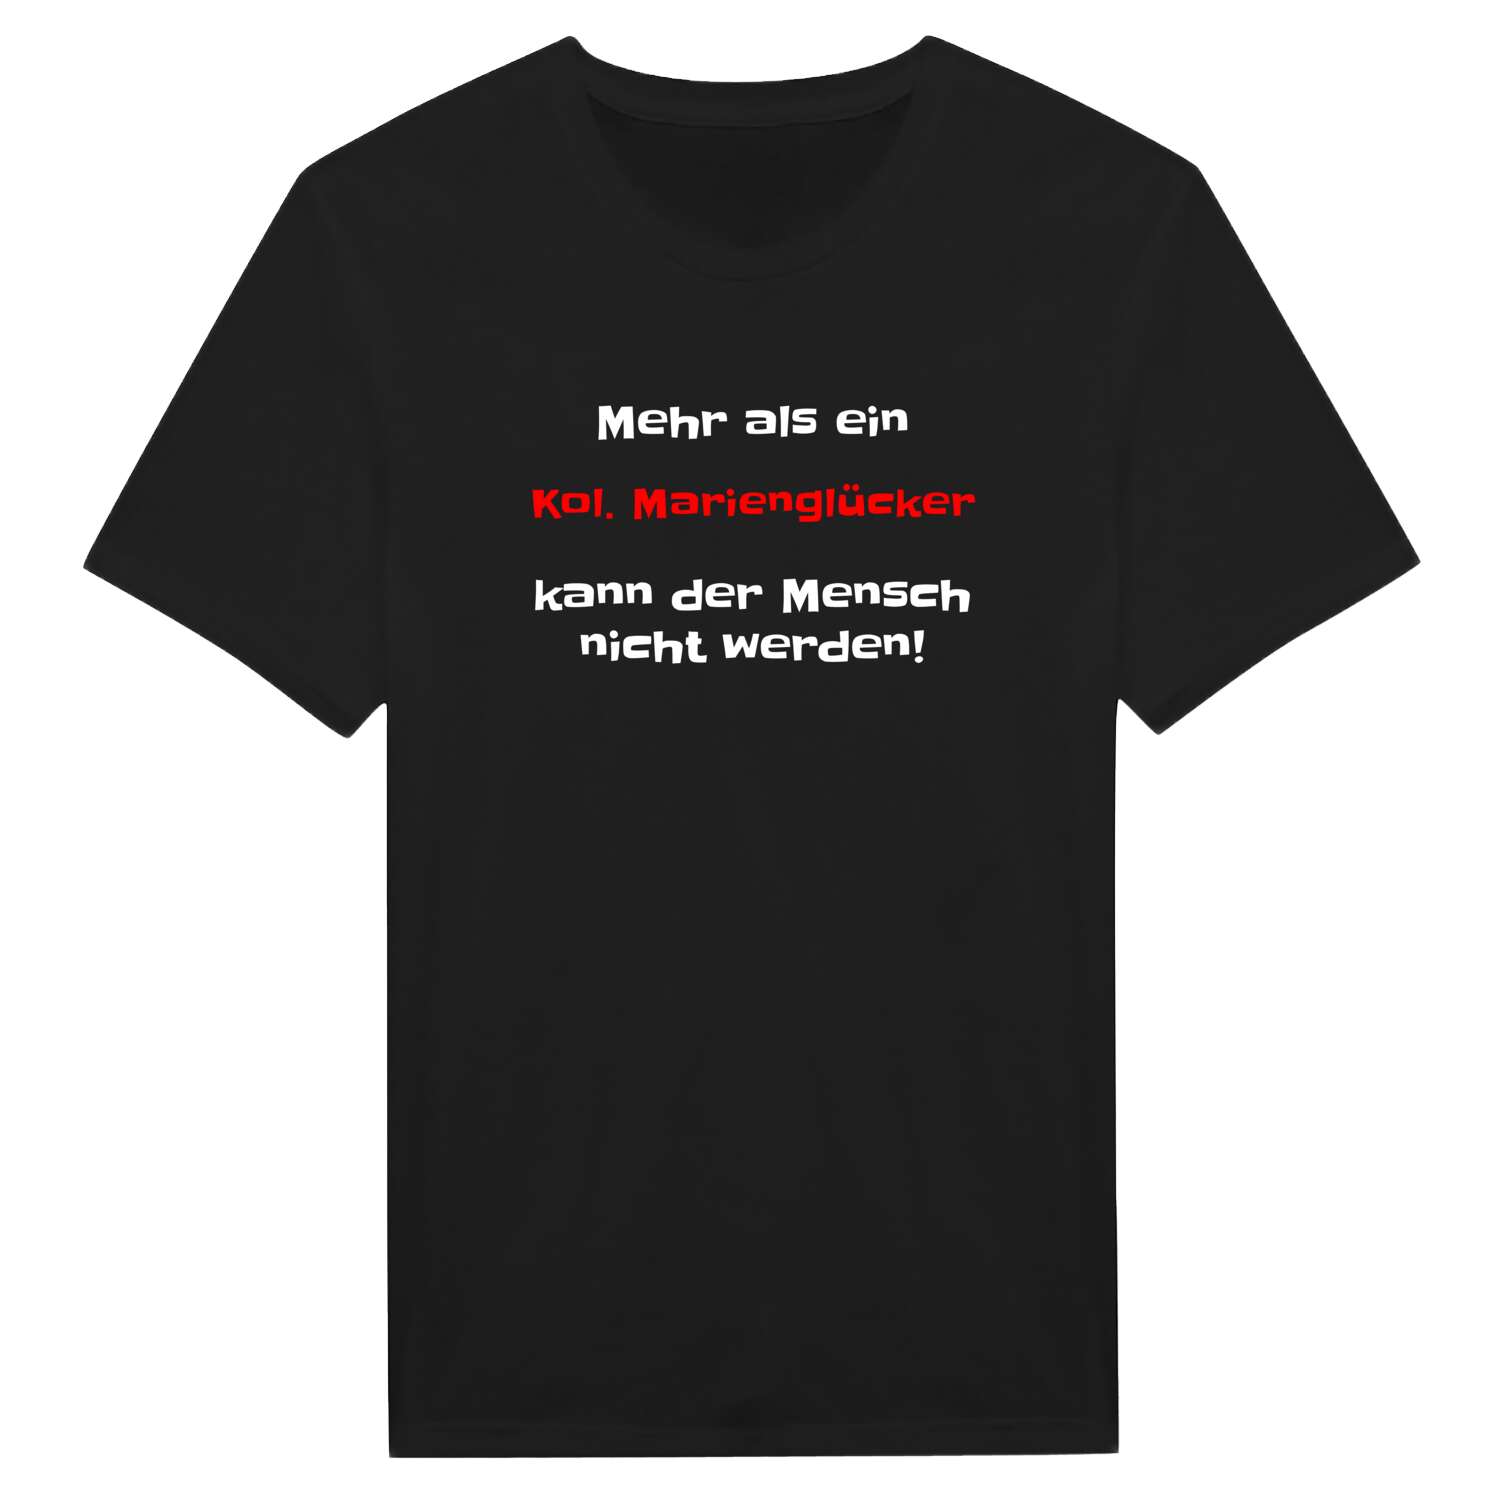 Kol. Marienglück T-Shirt »Mehr als ein«